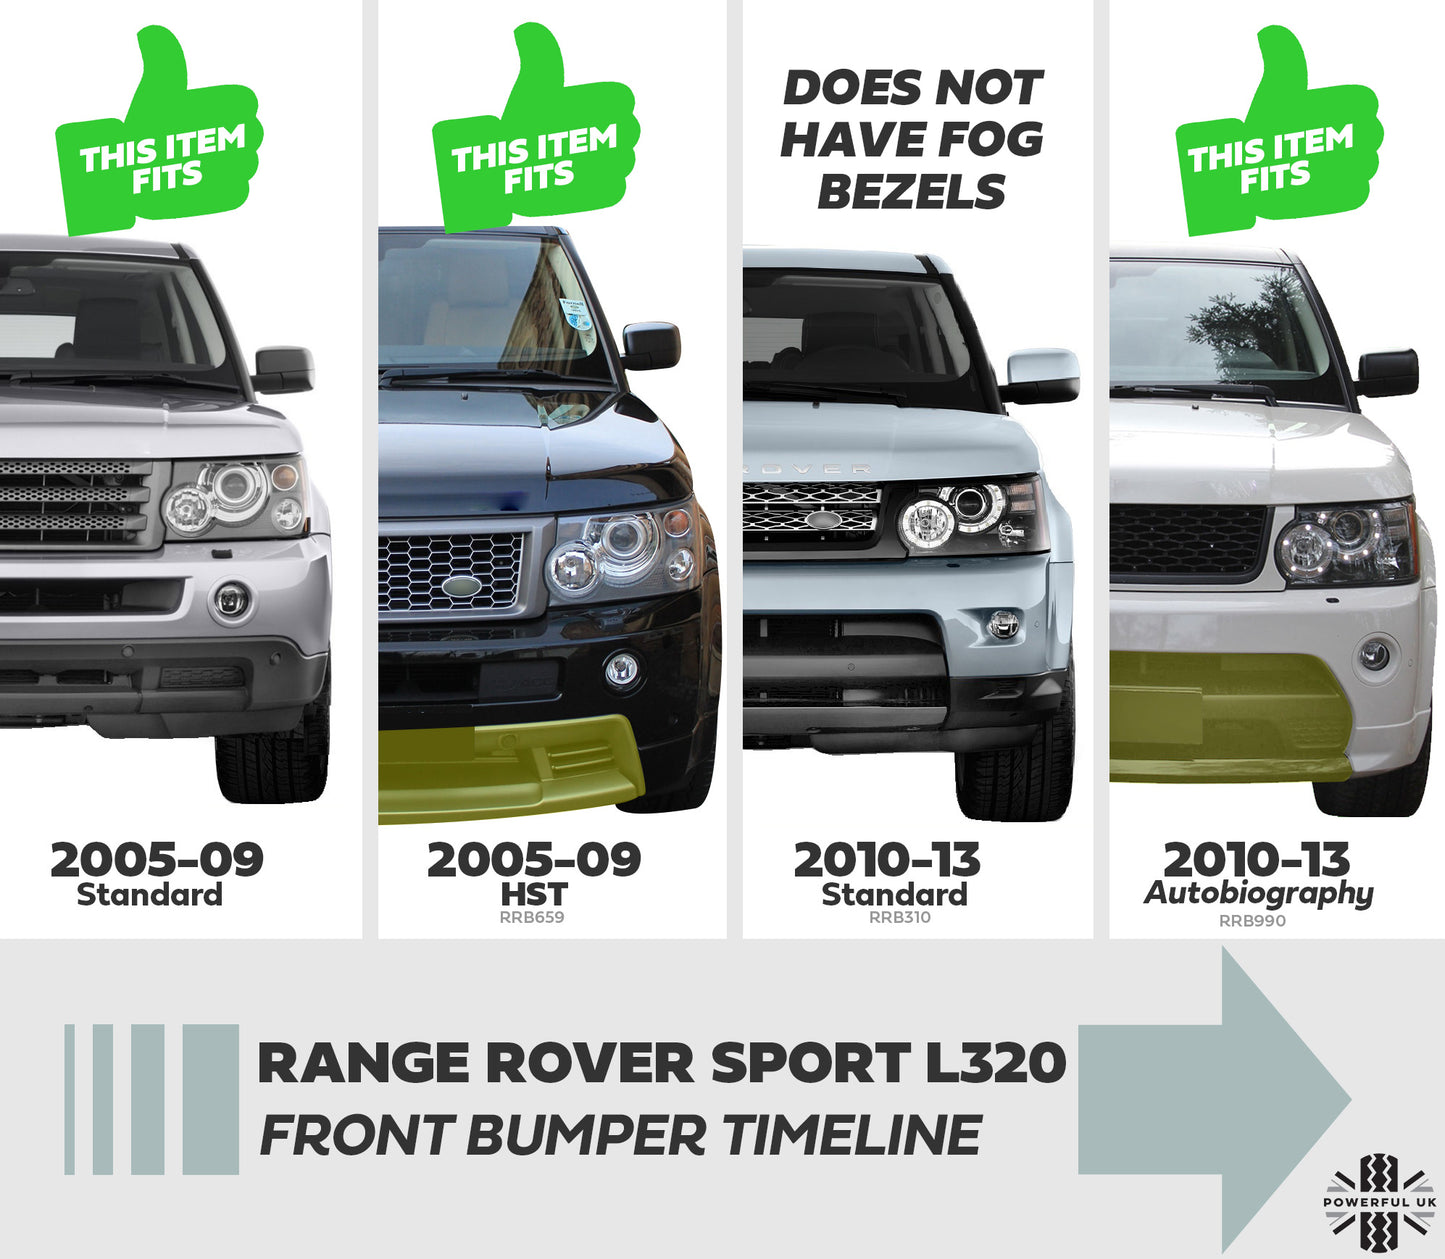 Fog Bezel Spring Clips x6 for Range Rover Sport L320 - Genuine